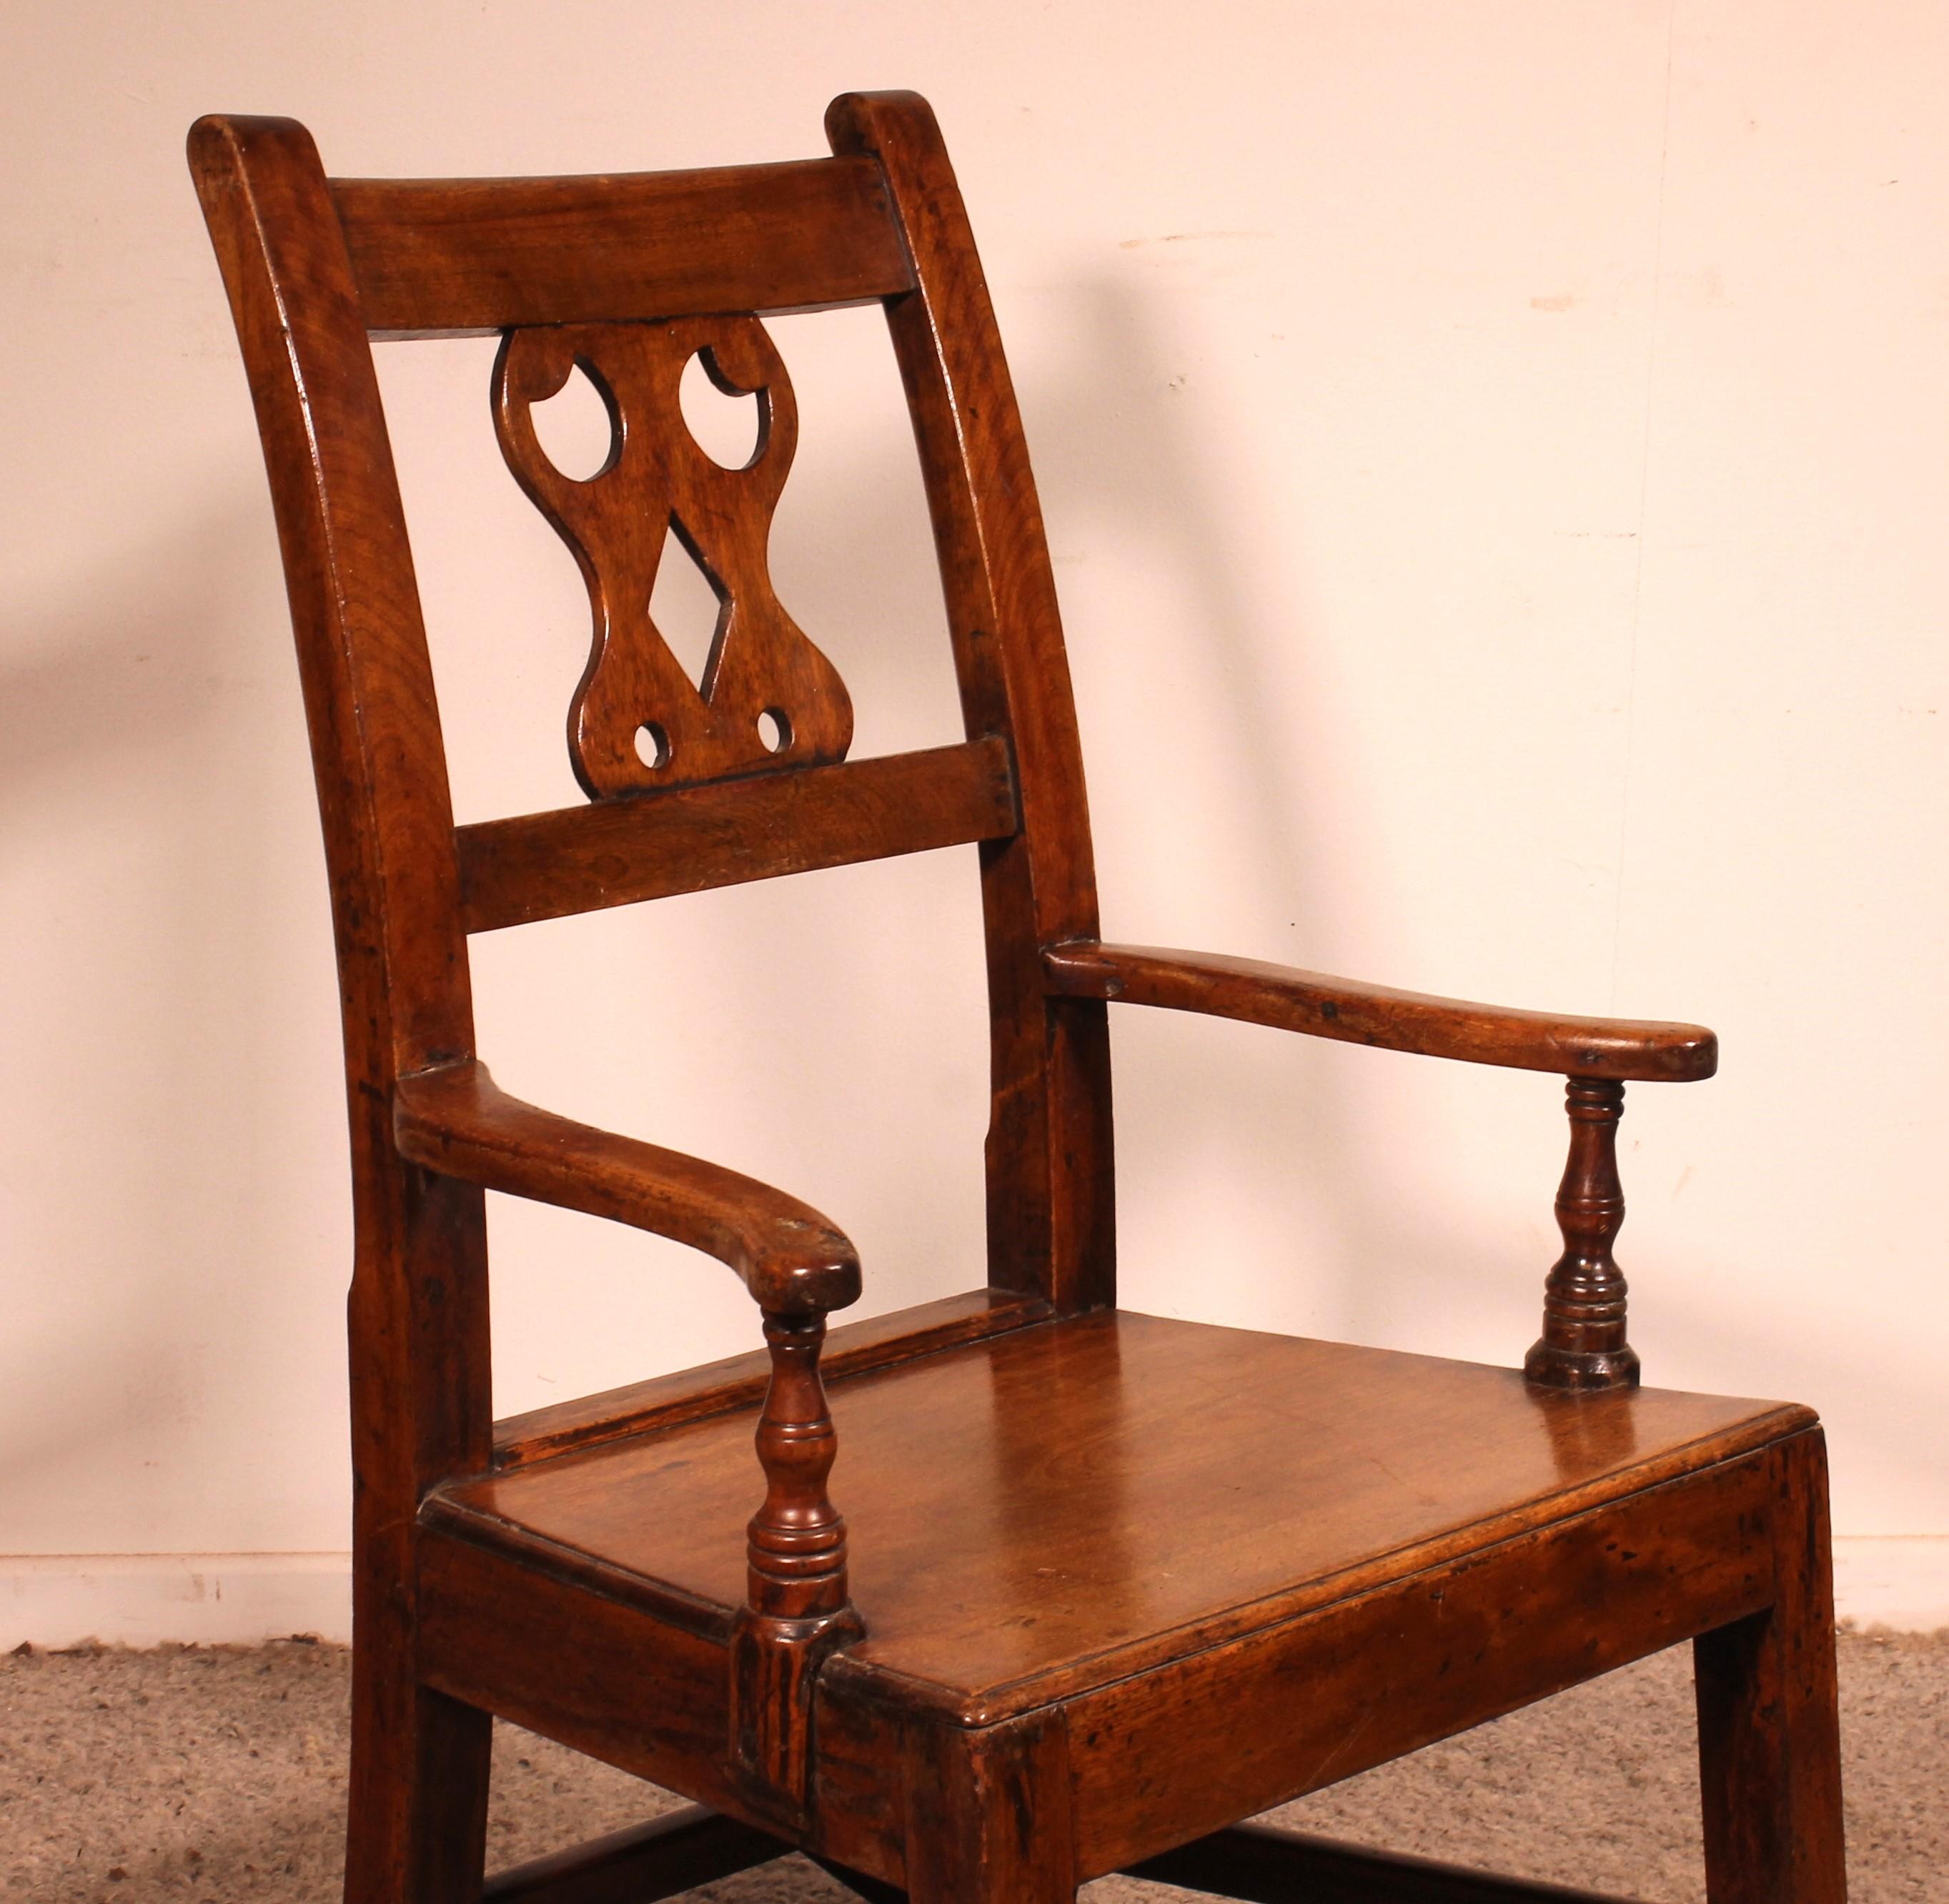 Schaukelstuhl in Mahagoni aus dem 18. Jahrhundert ausWales in Mahagoni
Seltenes Stück von guter Qualität

Die Armlehnen sind leicht gebogen und haben eine kleine Drehung

stabiler und sehr dekorativer Sessel